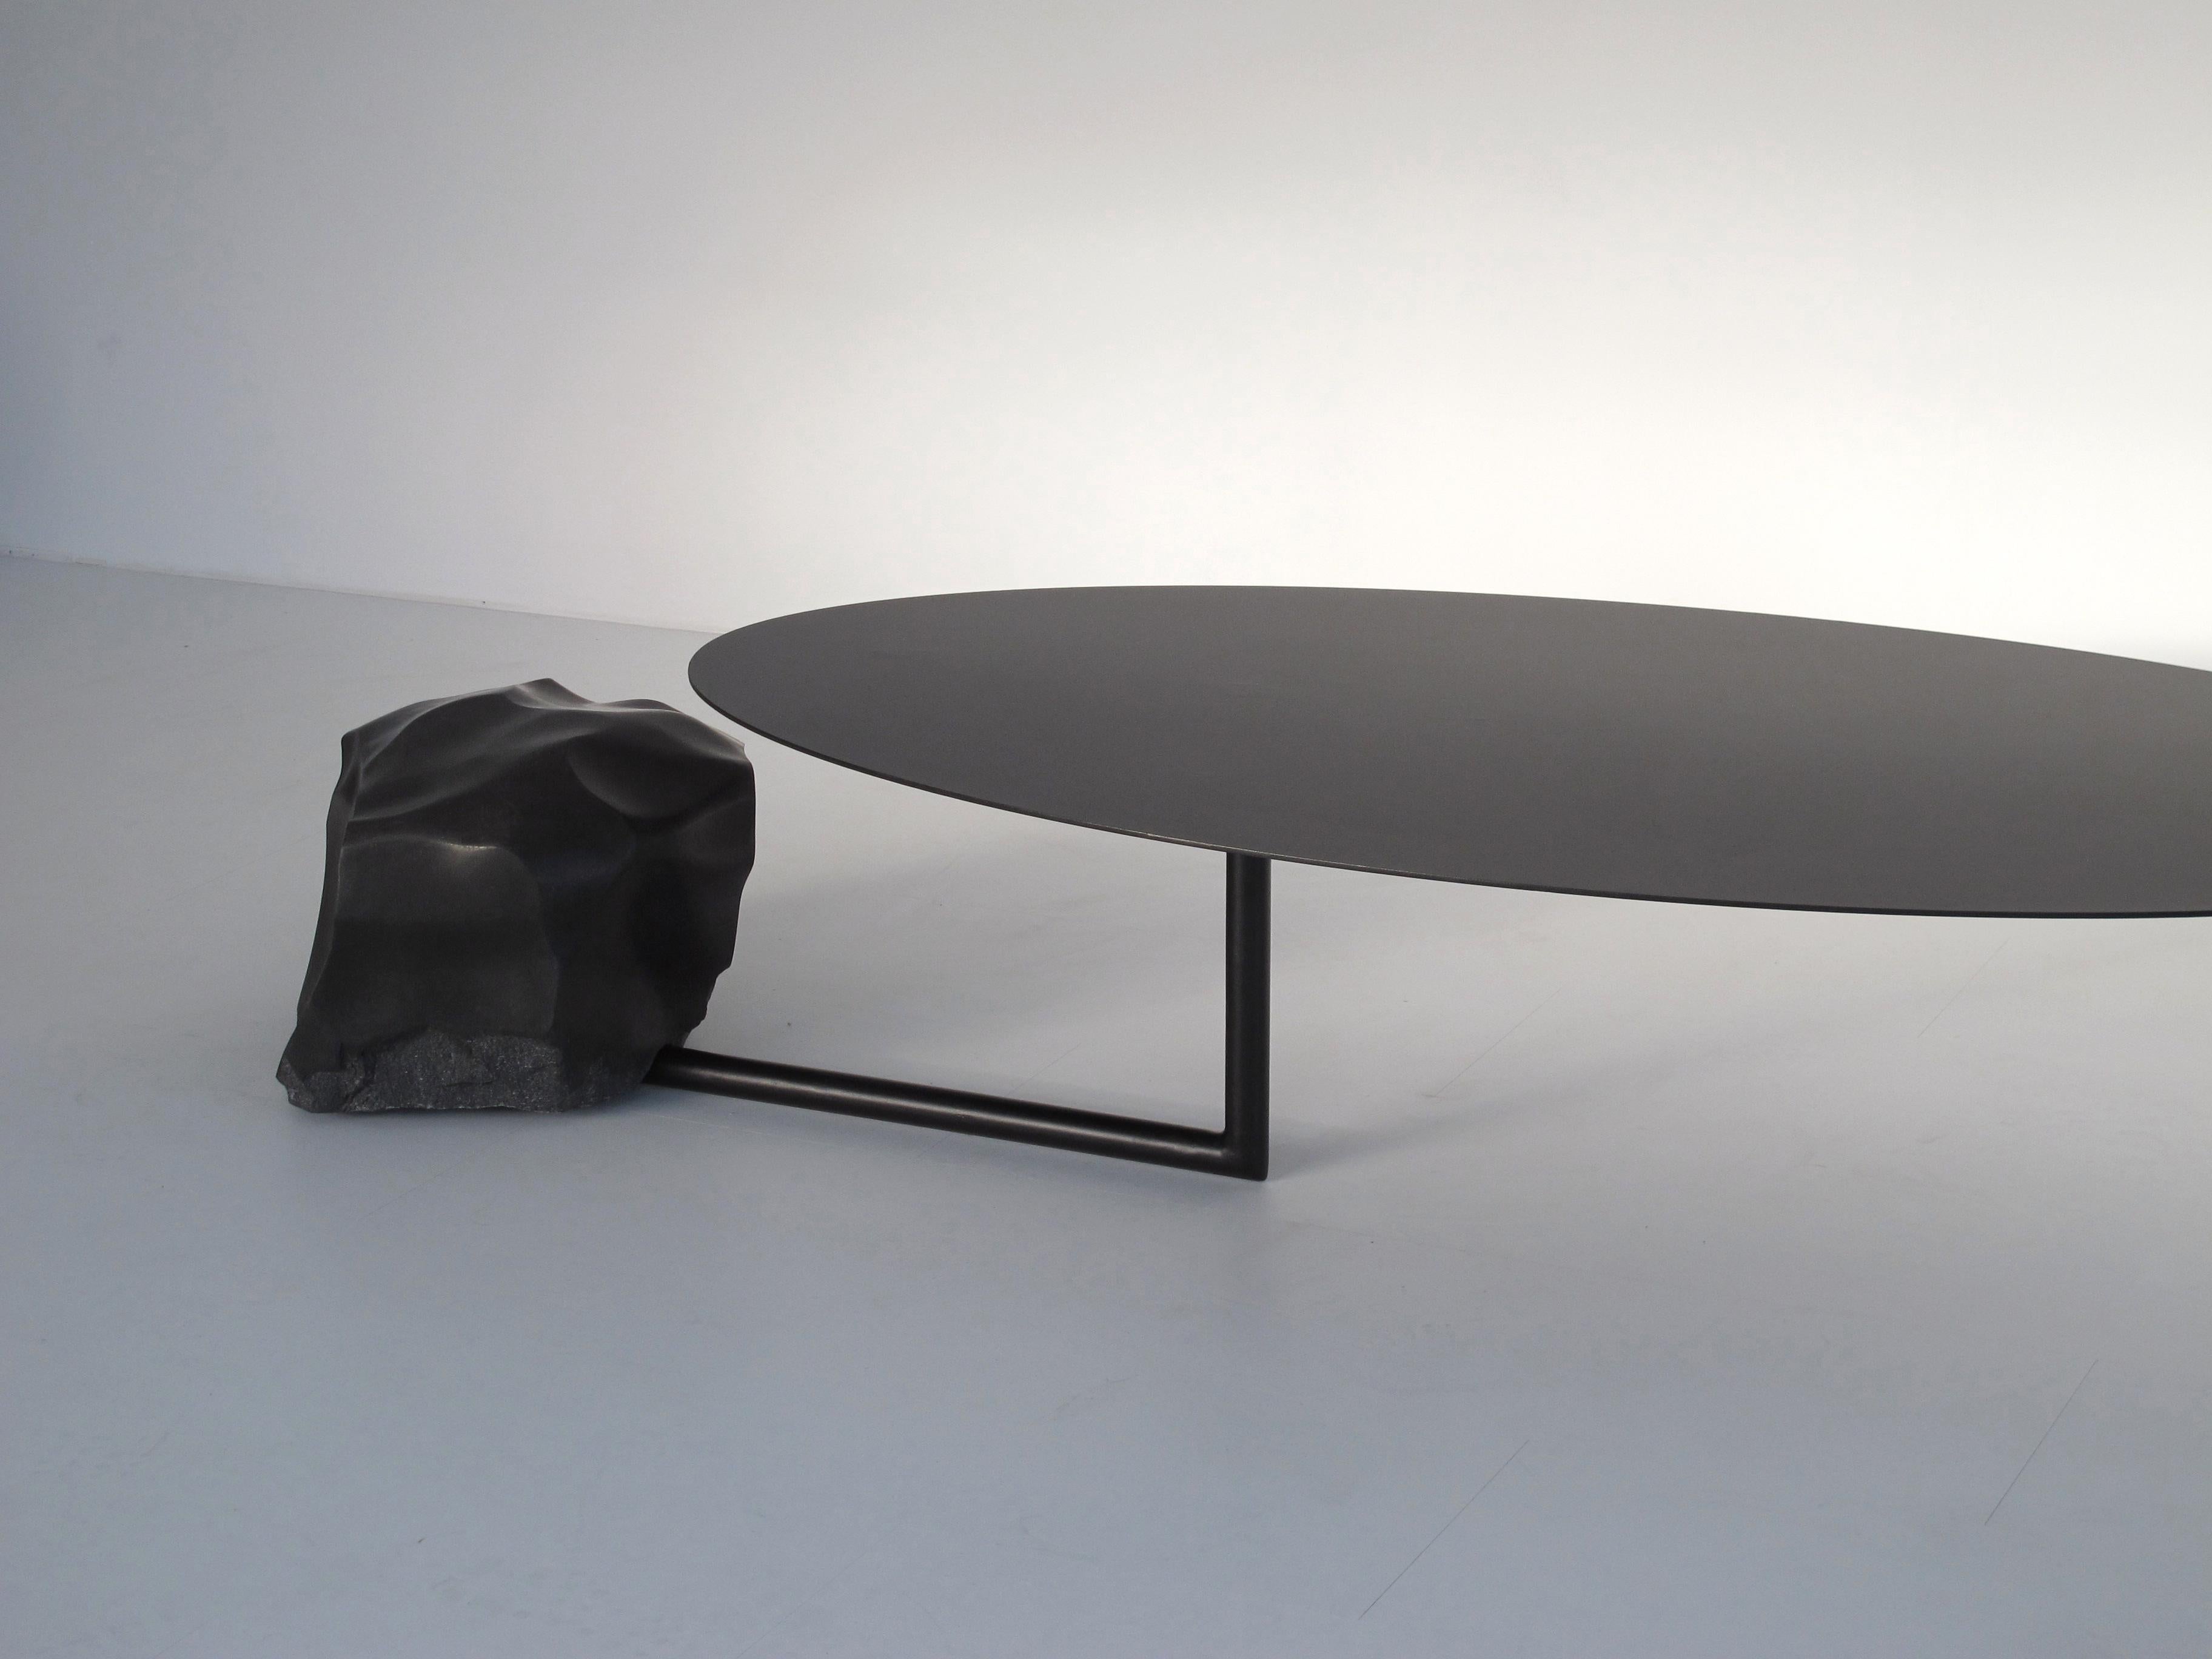 Collection de tables fabriquées par Max Enrich
Barcelone, 2018
Fer revêtu de poudre noire.
 